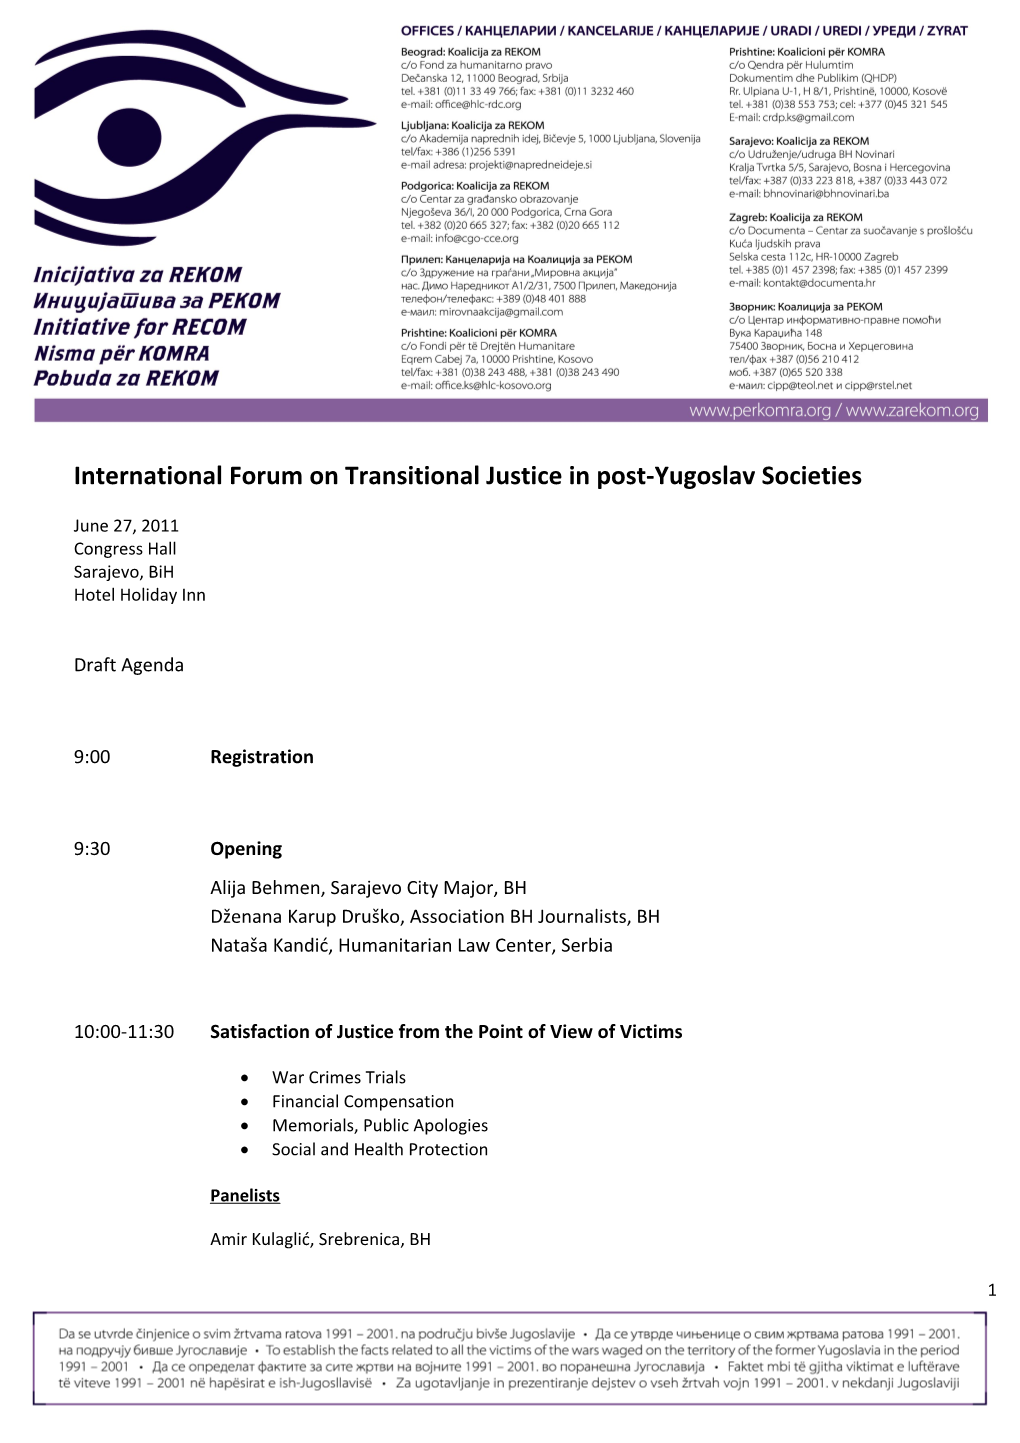 International Forum on Transitional Justice in Post-Yugoslav Societies